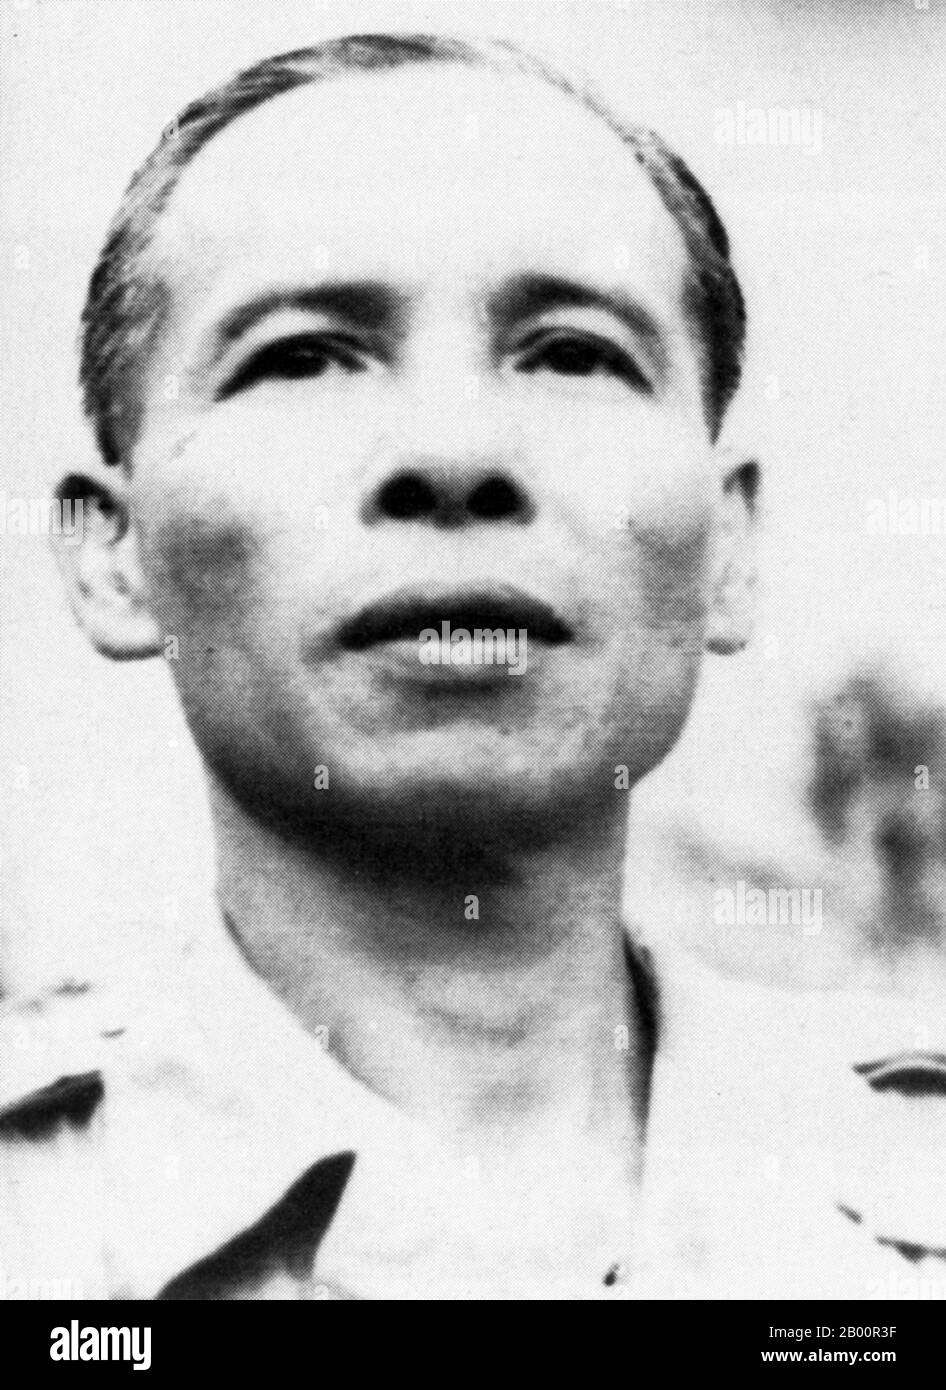 Kambodscha: Tou Samouth (ca. 1915-1962), auch bekannt als Achar Sok, war ein kambodschanischer kommunistischer Politiker und ein Gründungsmitglied der kambodschanischen Kommunistischen Partei. Tou Samouth (ca. 1915-1962), auch bekannt als Achar Sok, war ein kambodschanischer kommunistischer Politiker. Als eines der Gründungsmitglieder der Partei in Kambodscha und Leiter ihrer gemäßigteren Fraktion wird er vor allem daran erinnert, Saloth Sar, den Mann, der später Pol Pot, Anführer der Khmer Rouge, werden sollte, zu unterstützen. Samouth verschwand unter umstrittenen Umständen im Juli 1962. Stockfoto